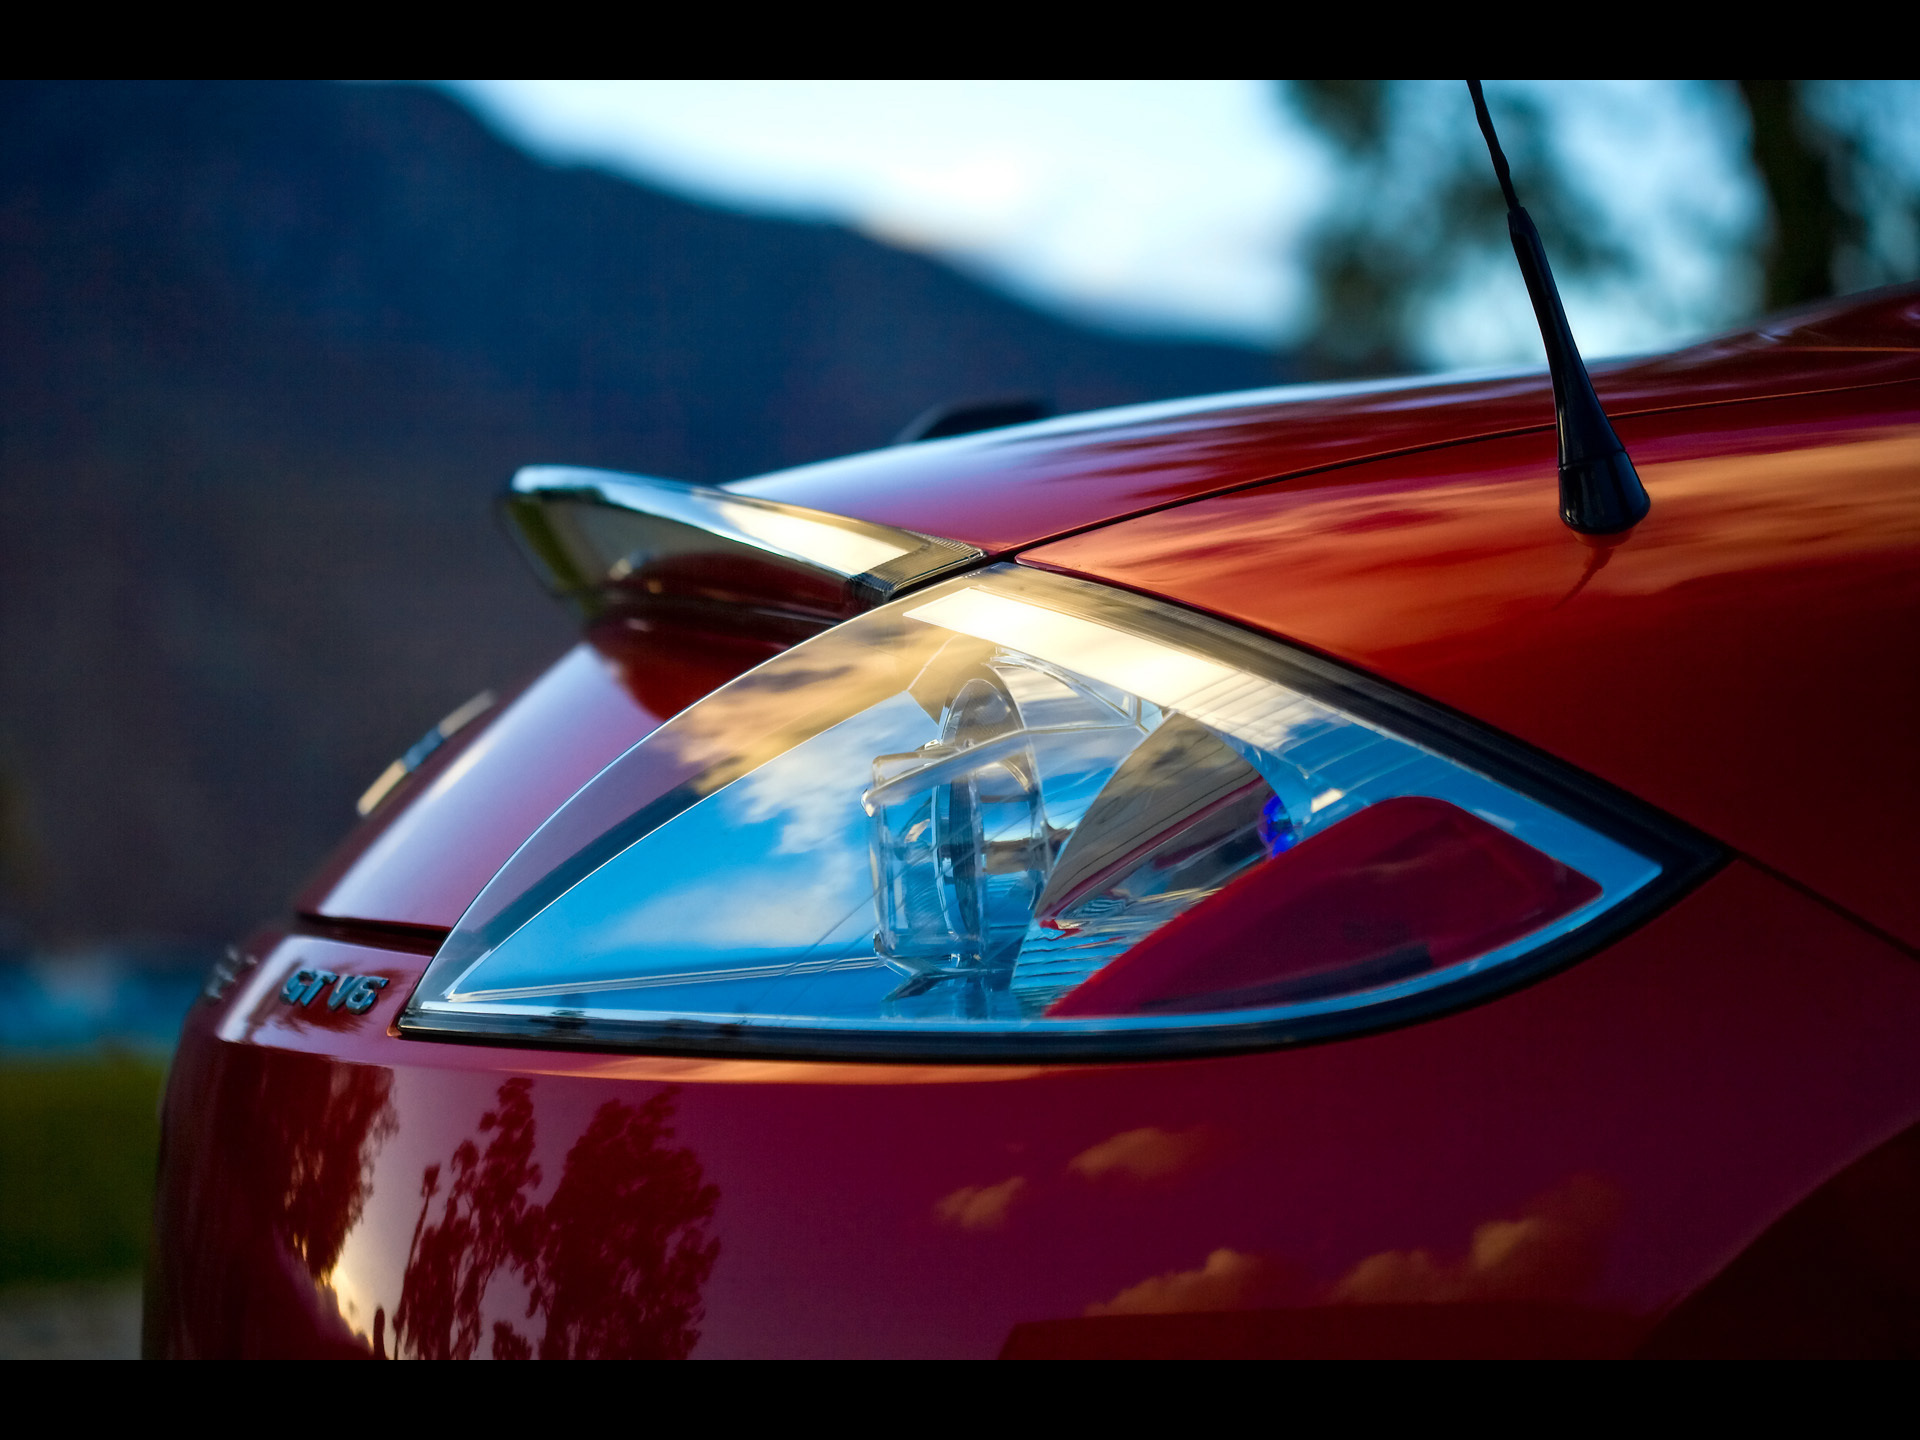 Meilleurs fonds d'écran Mitsubishi Eclipse Spyder pour l'écran du téléphone